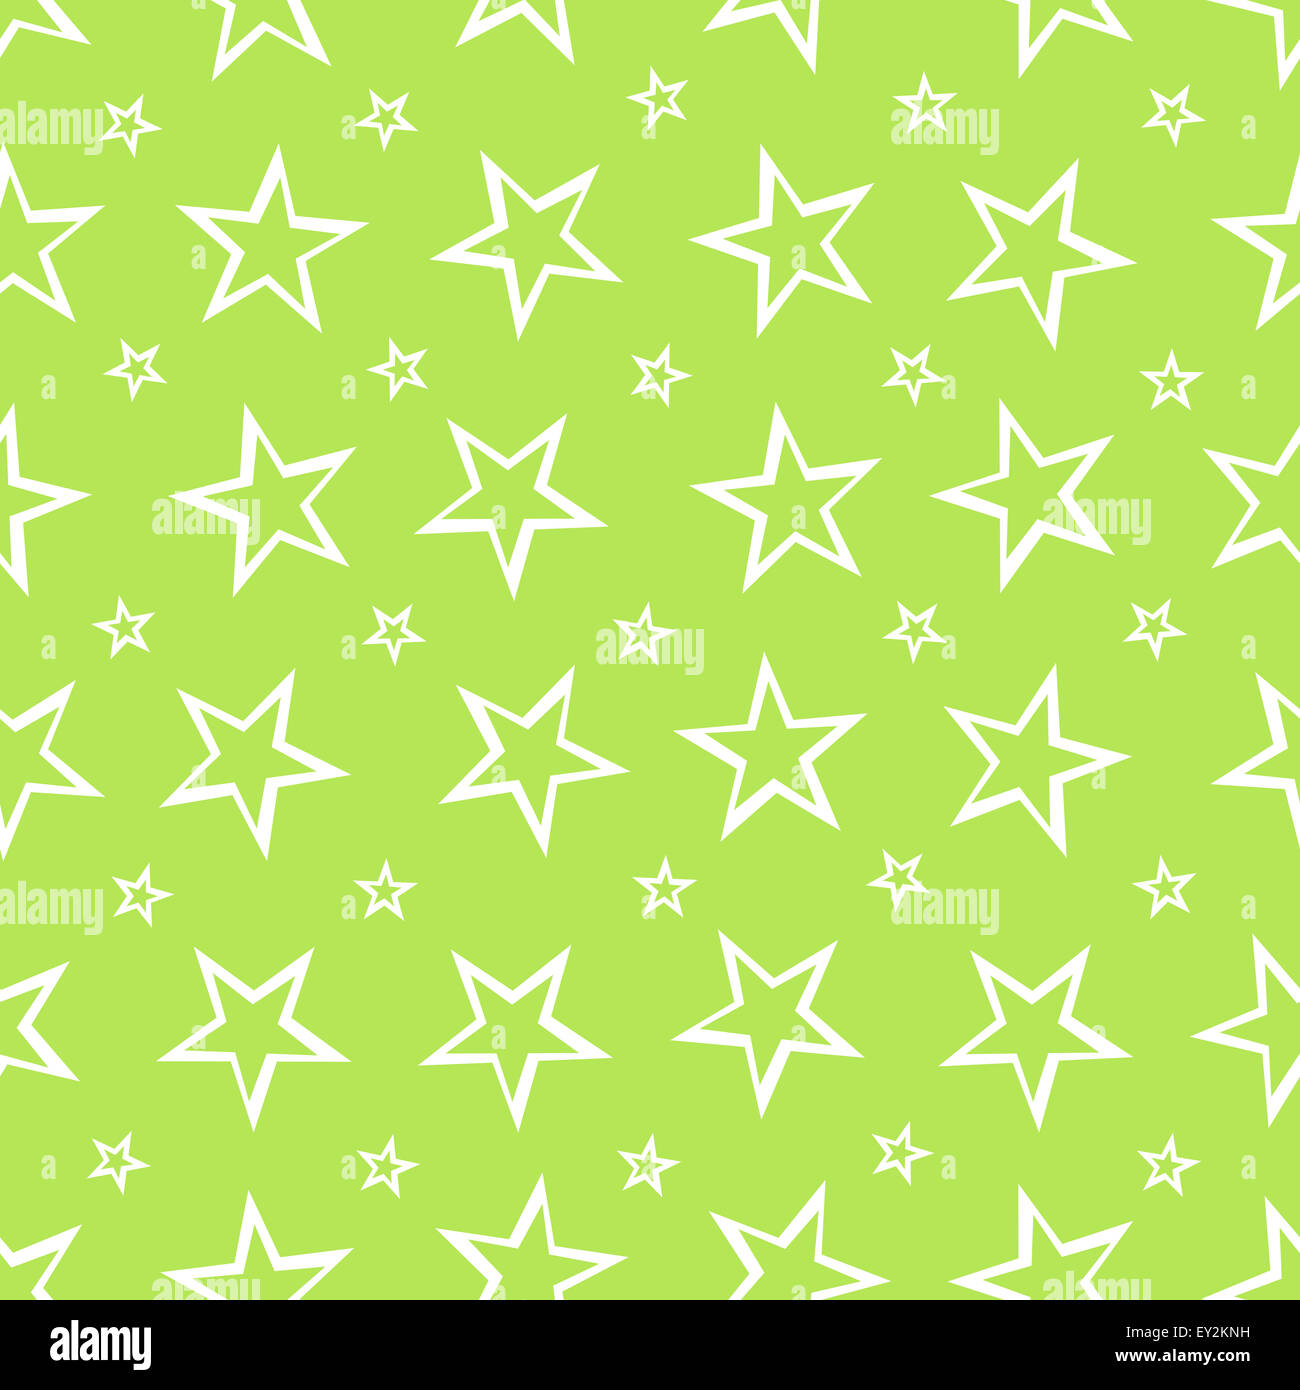 Motif de fond transparent avec des étoiles Banque D'Images